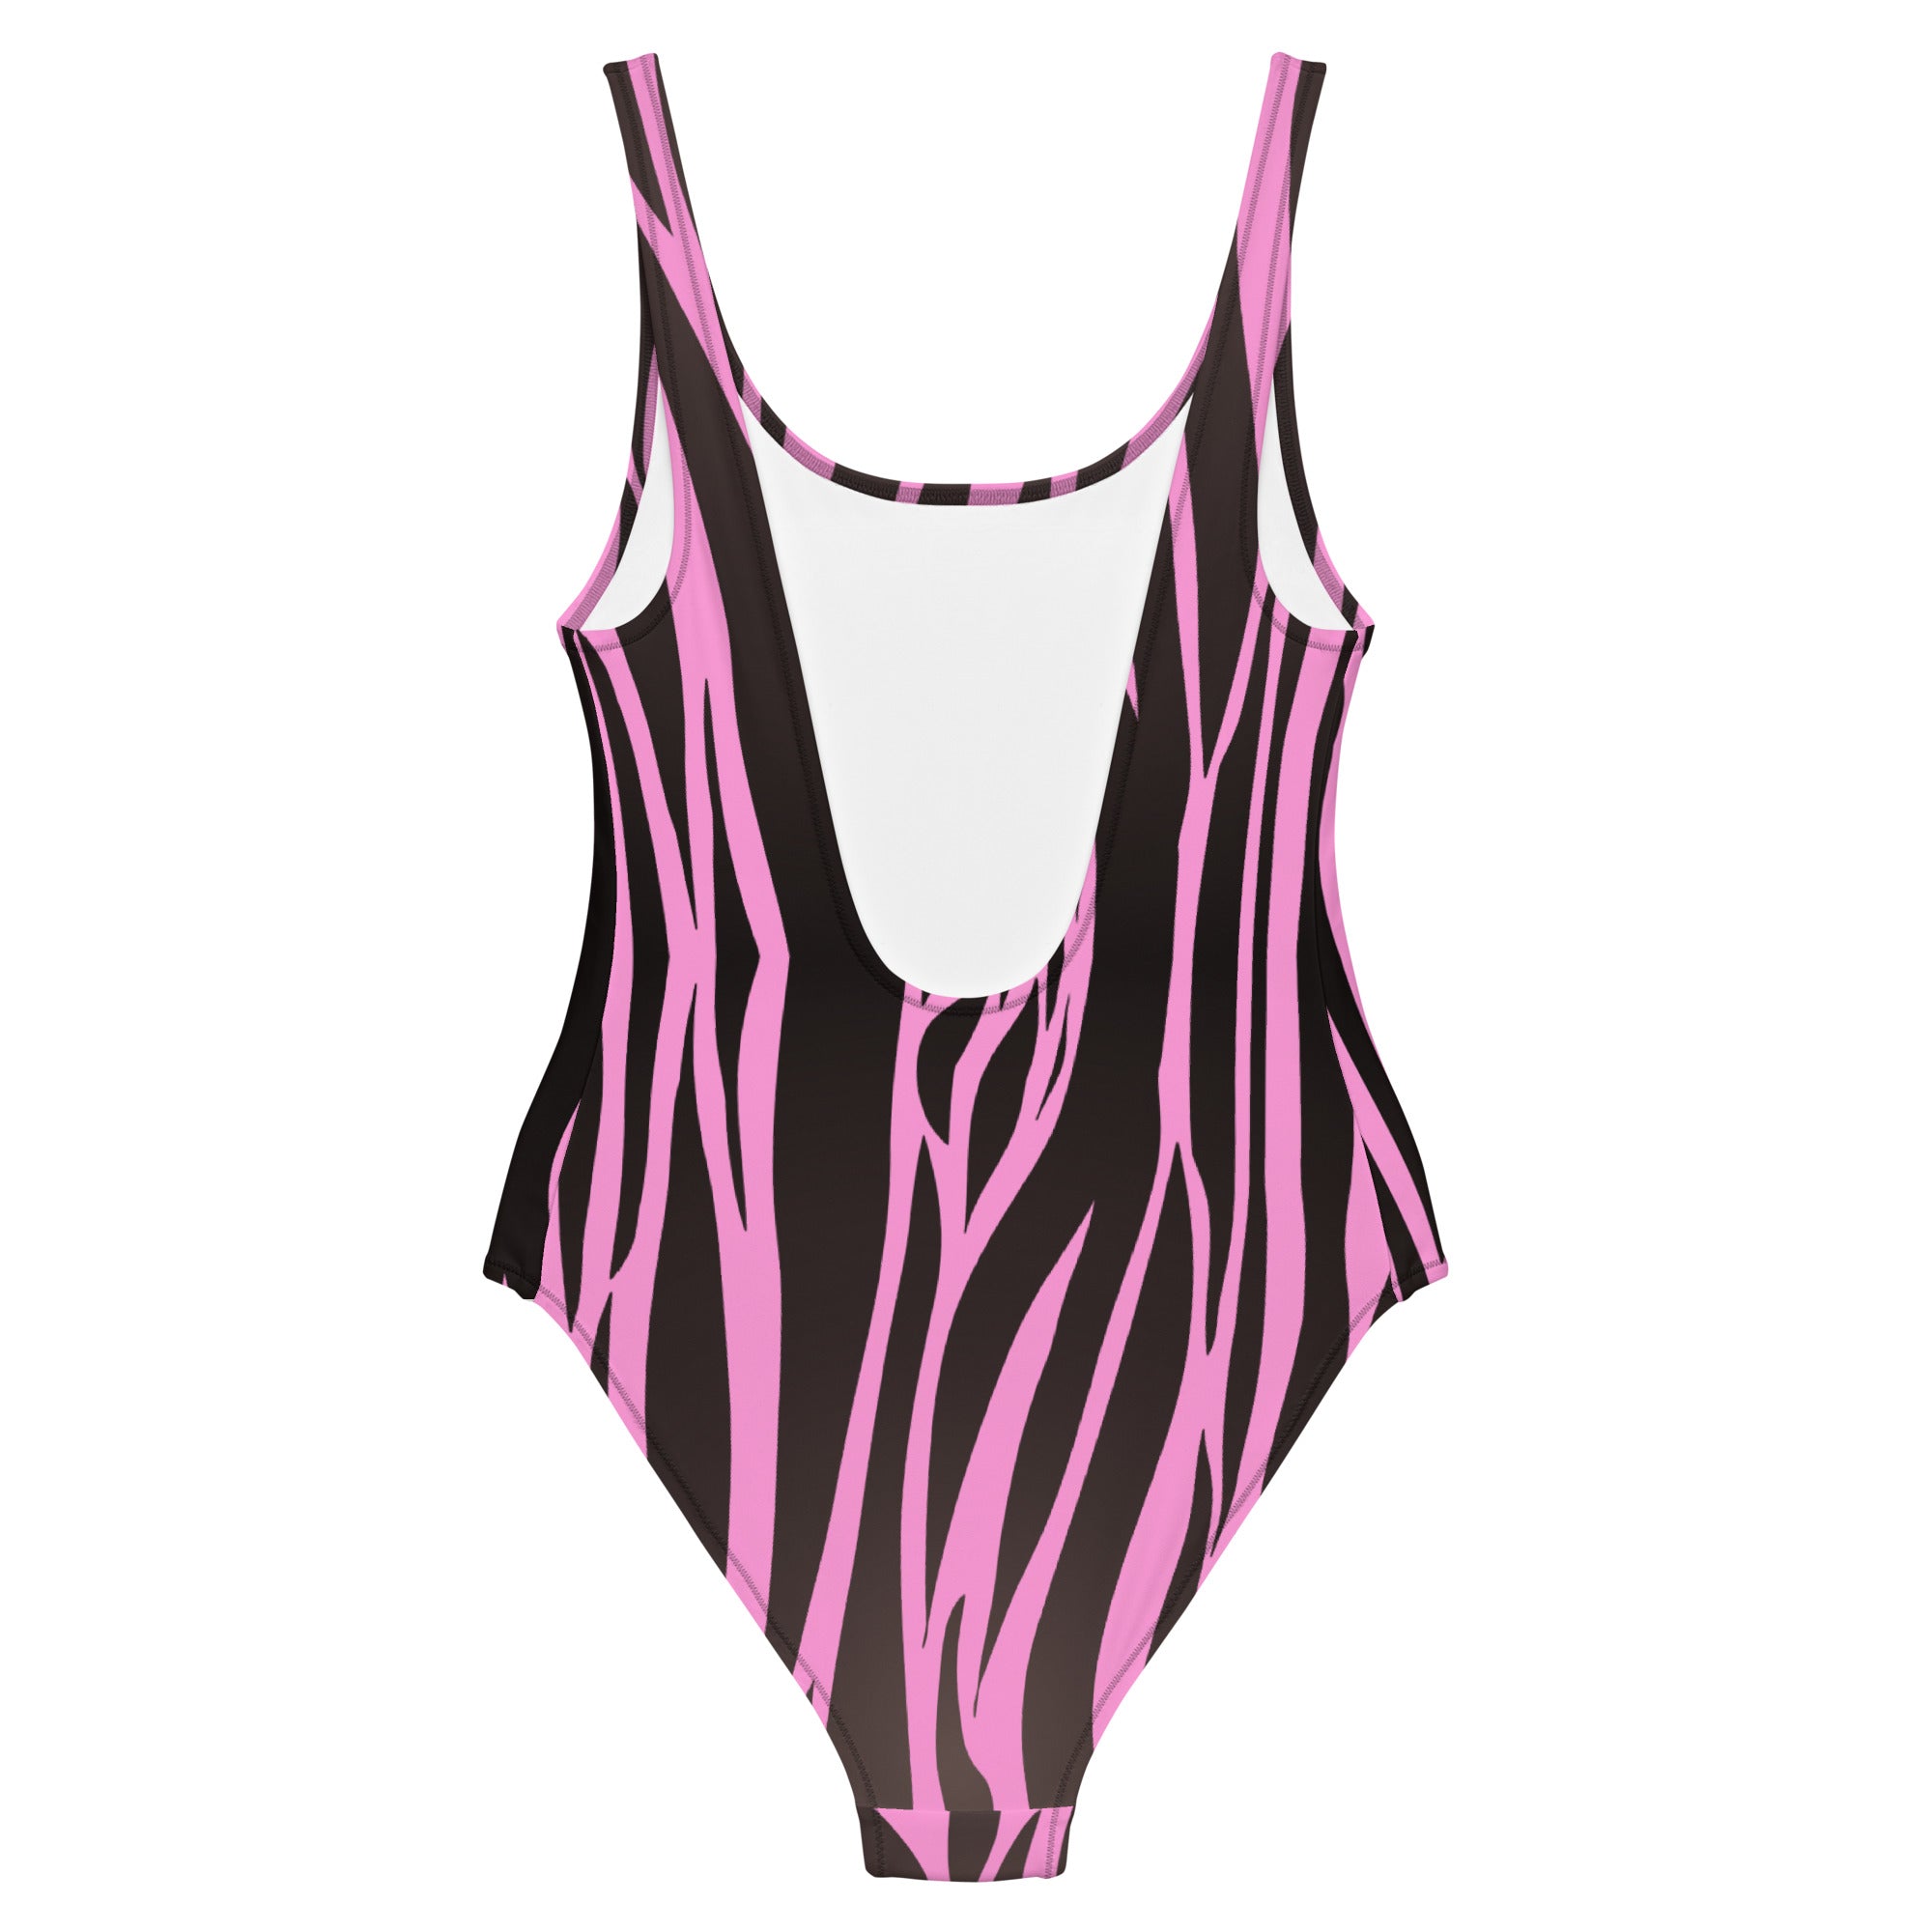 Animal print design swimsuit for females